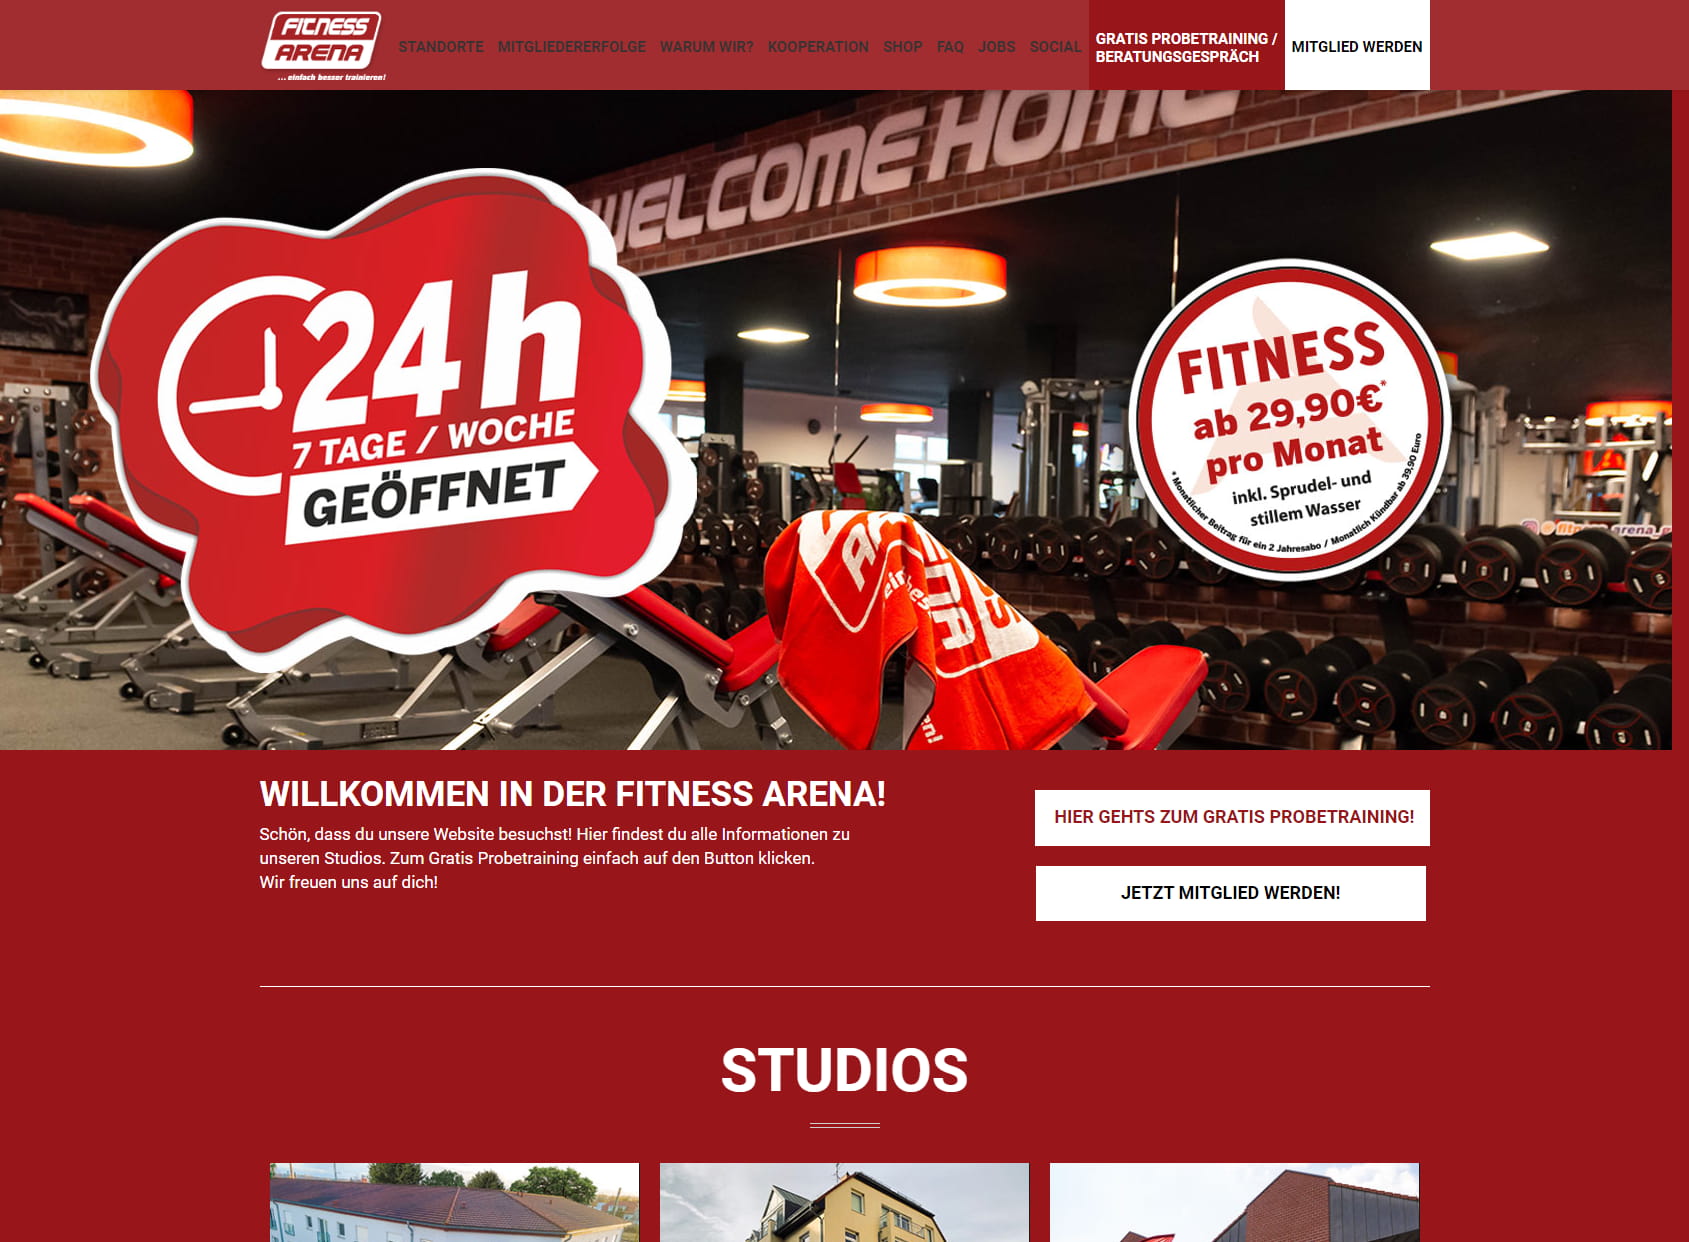 Fitness Arena Jena - Ihr Fitnessstudio!